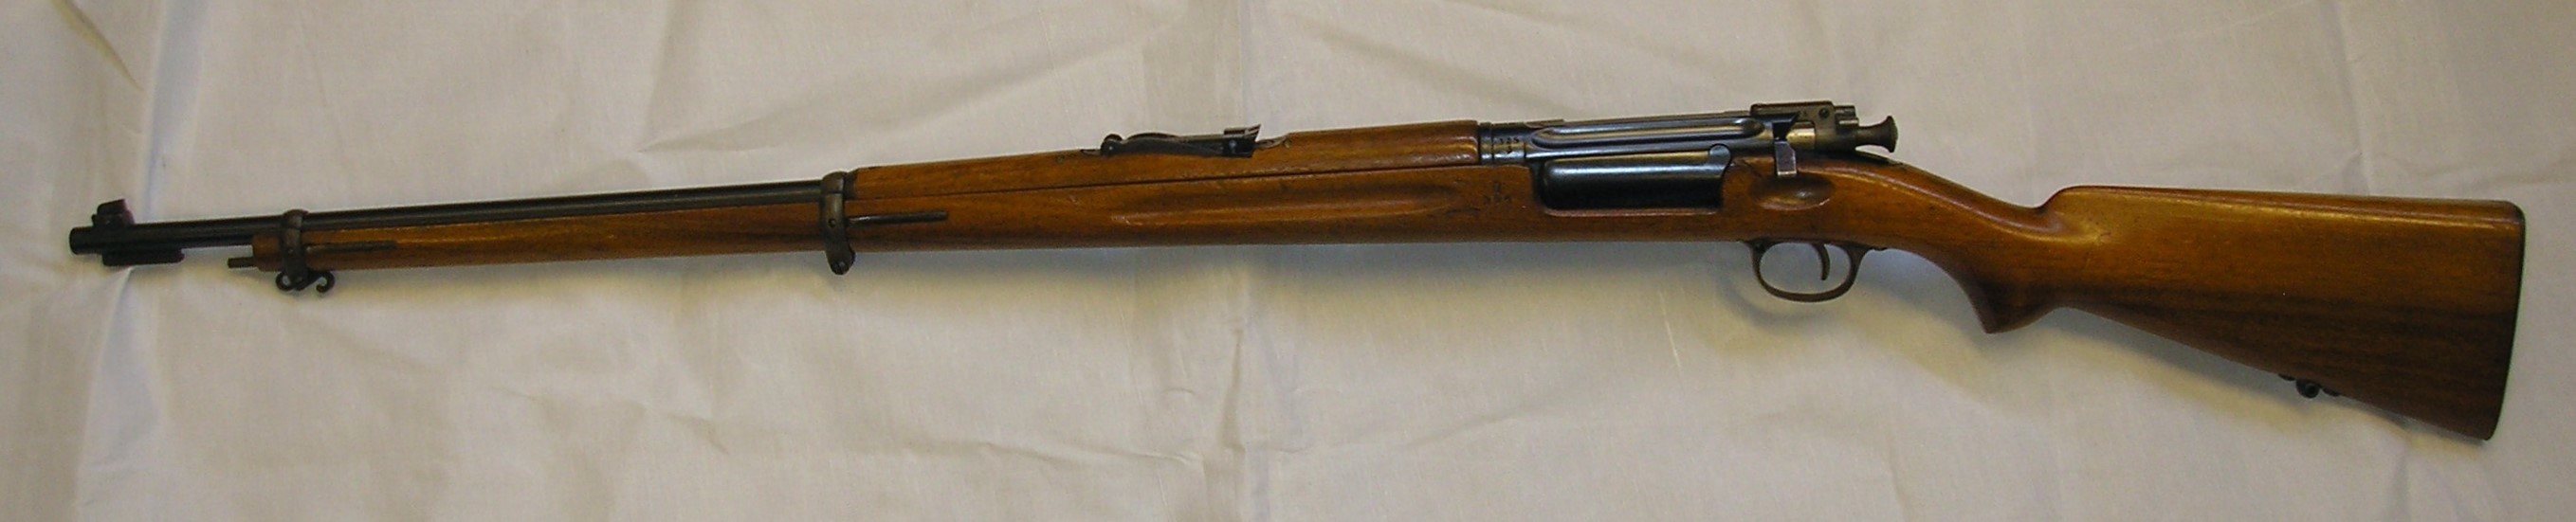 ./guns/rifle/bilder/Rifle-Kongsberg-Krag-M1894-1898-privat-325-2.JPG